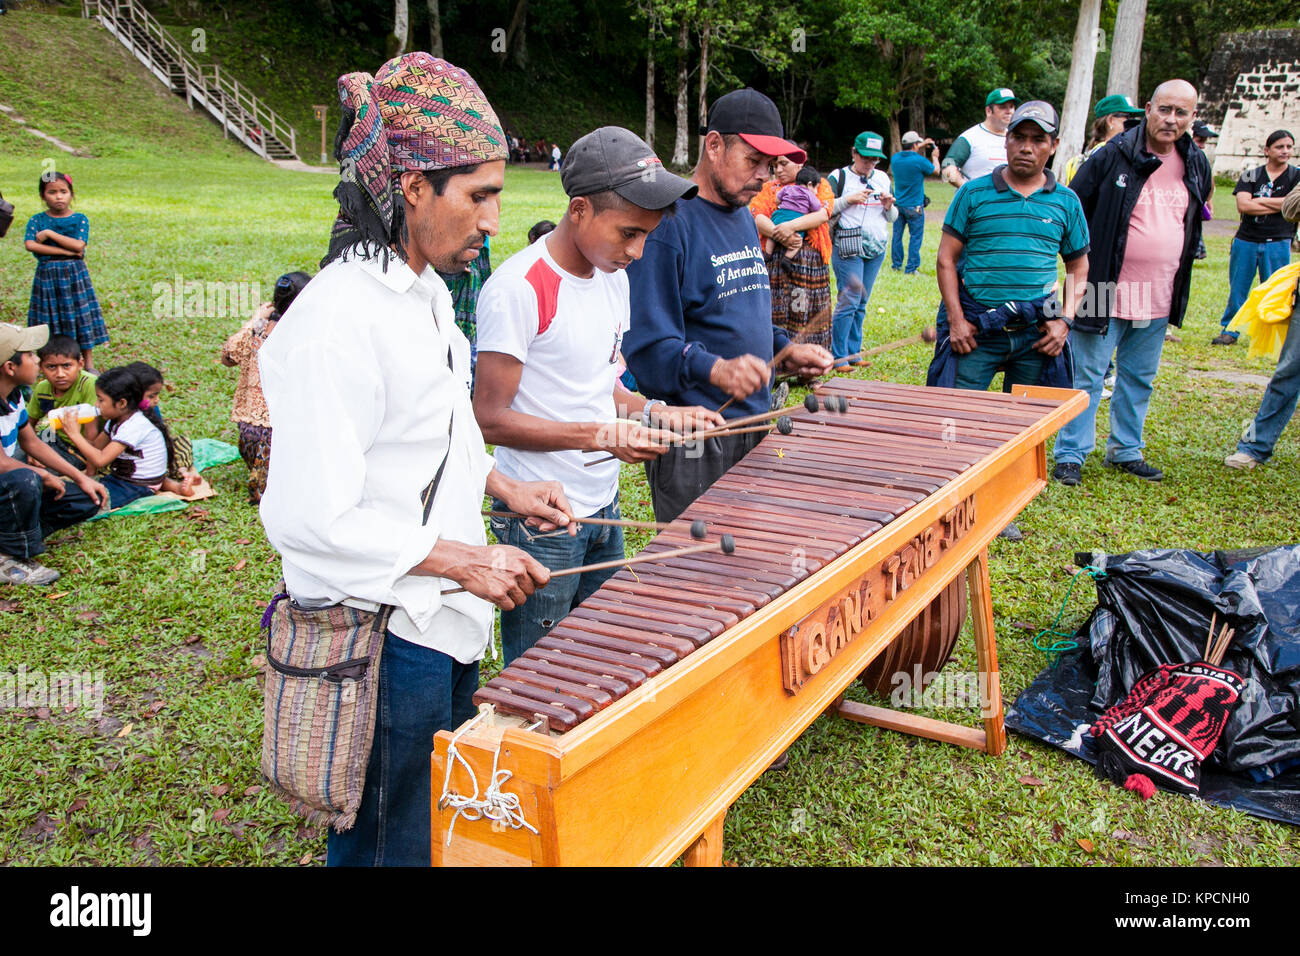 TIKAL, GUATEMALA - Dec 21, 2015: Unbekannter Maya Menschen Schlagzeug spielen am 21. Dezember 2015 in Tikal, Guatemala. Traditionelle Maya Feuer ceremo Stockfoto